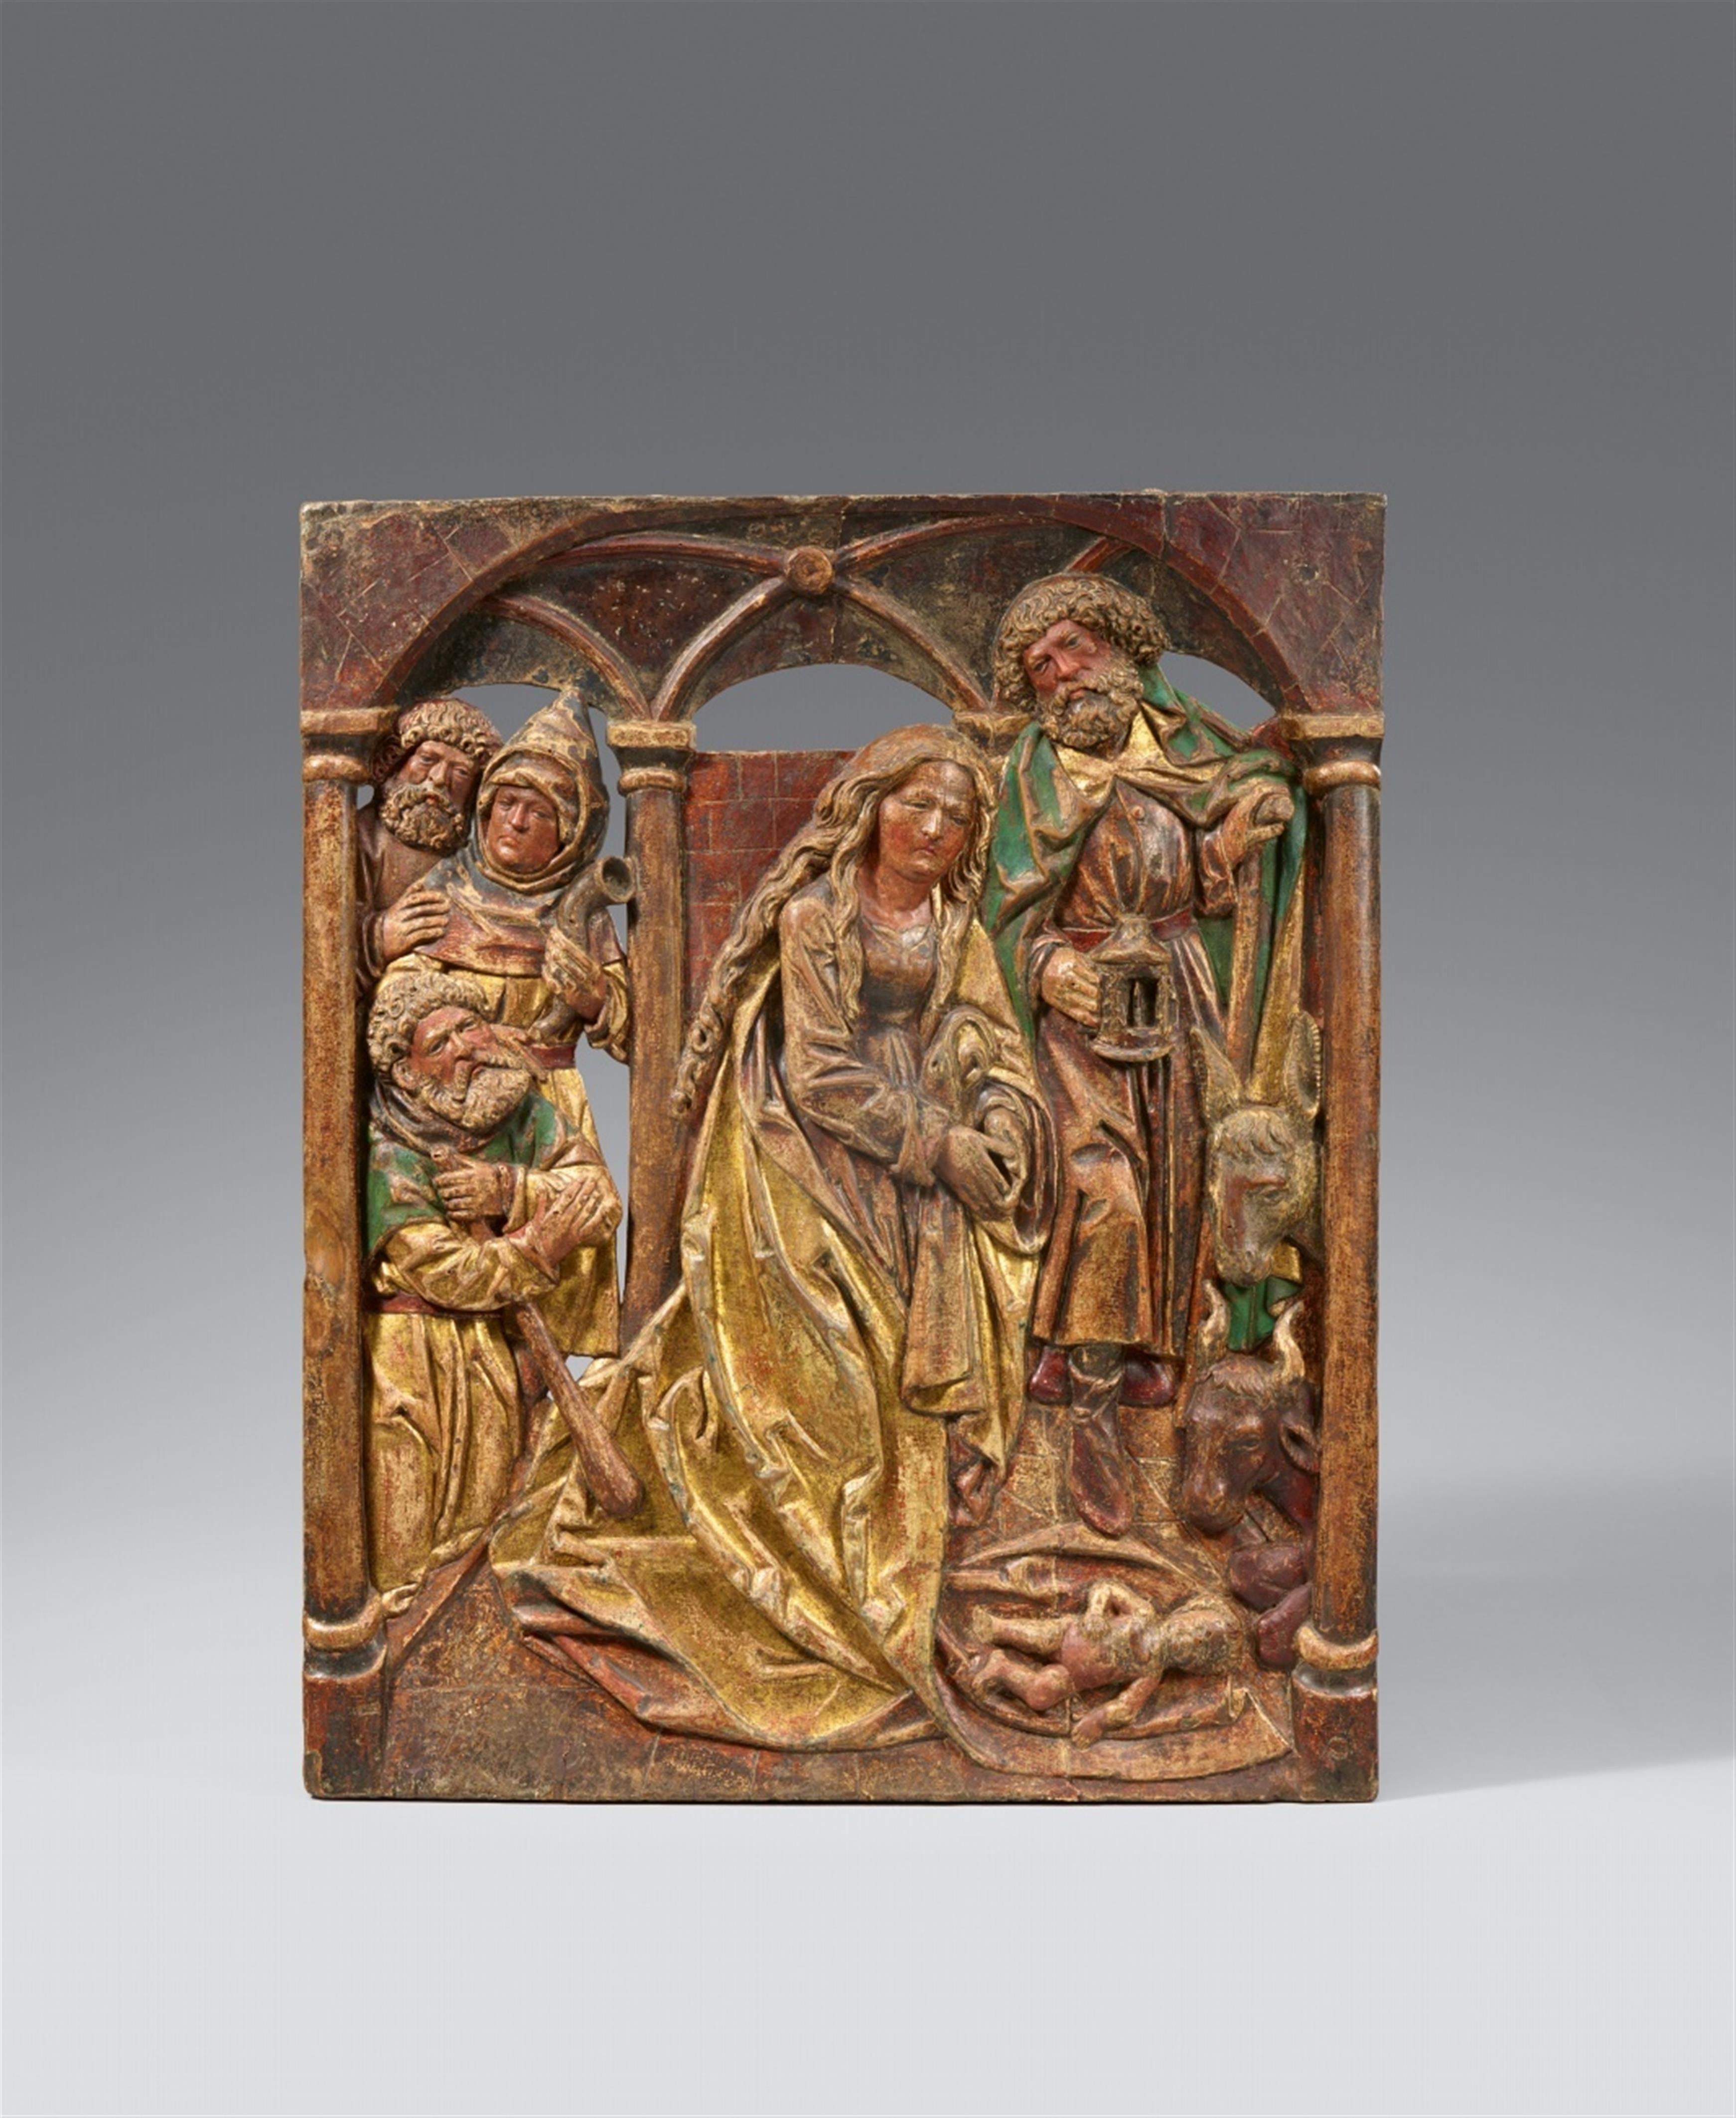 Tilman Riemenschneider, studio of - A carved wood Nativity relief, studio of Tilman Riemenschneider - image-1